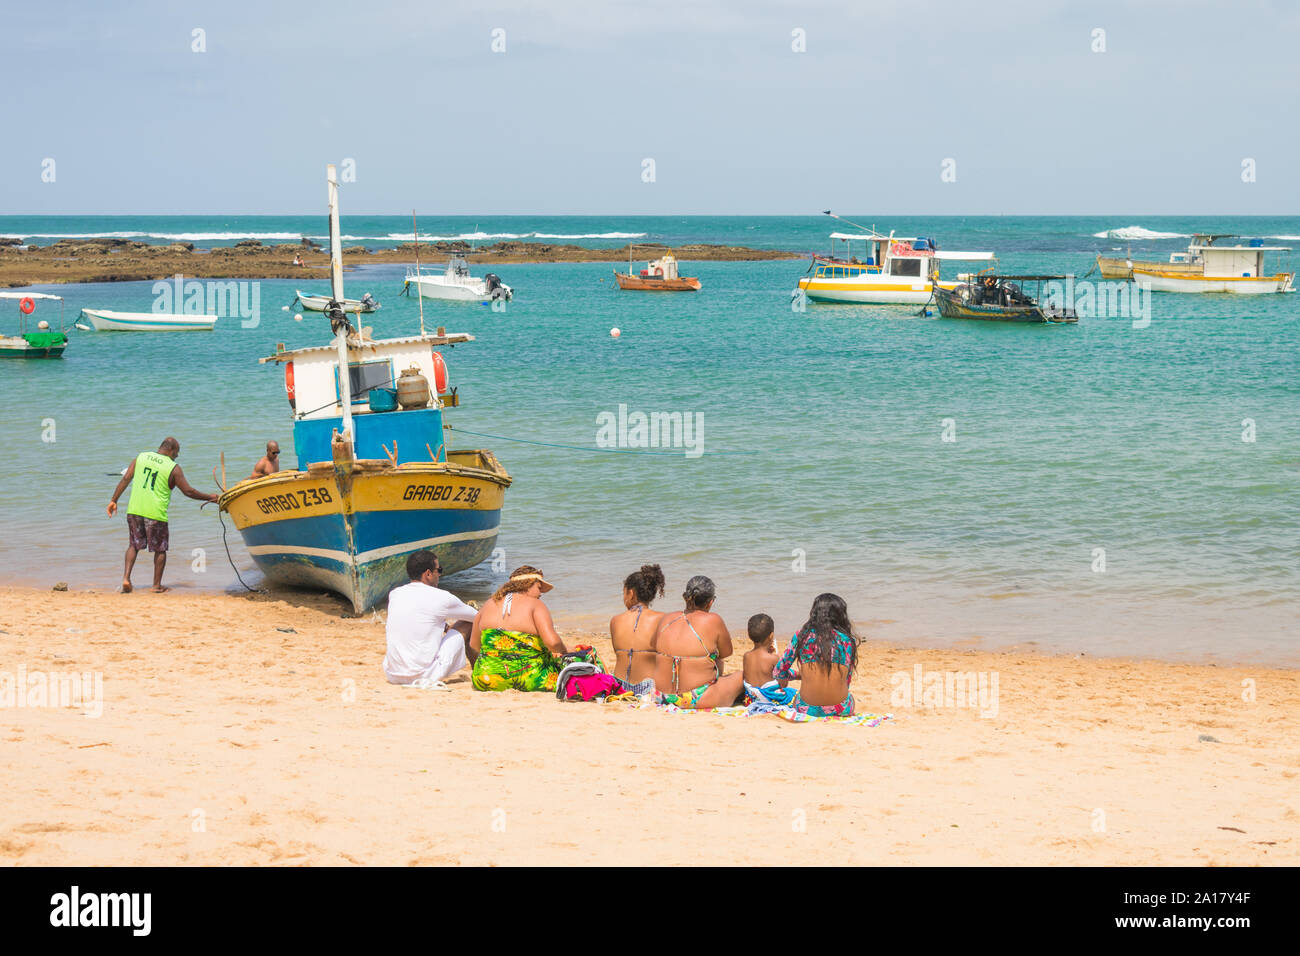 Praia do Forte, Brazil - Circa September 2019: People enjoying a sunny